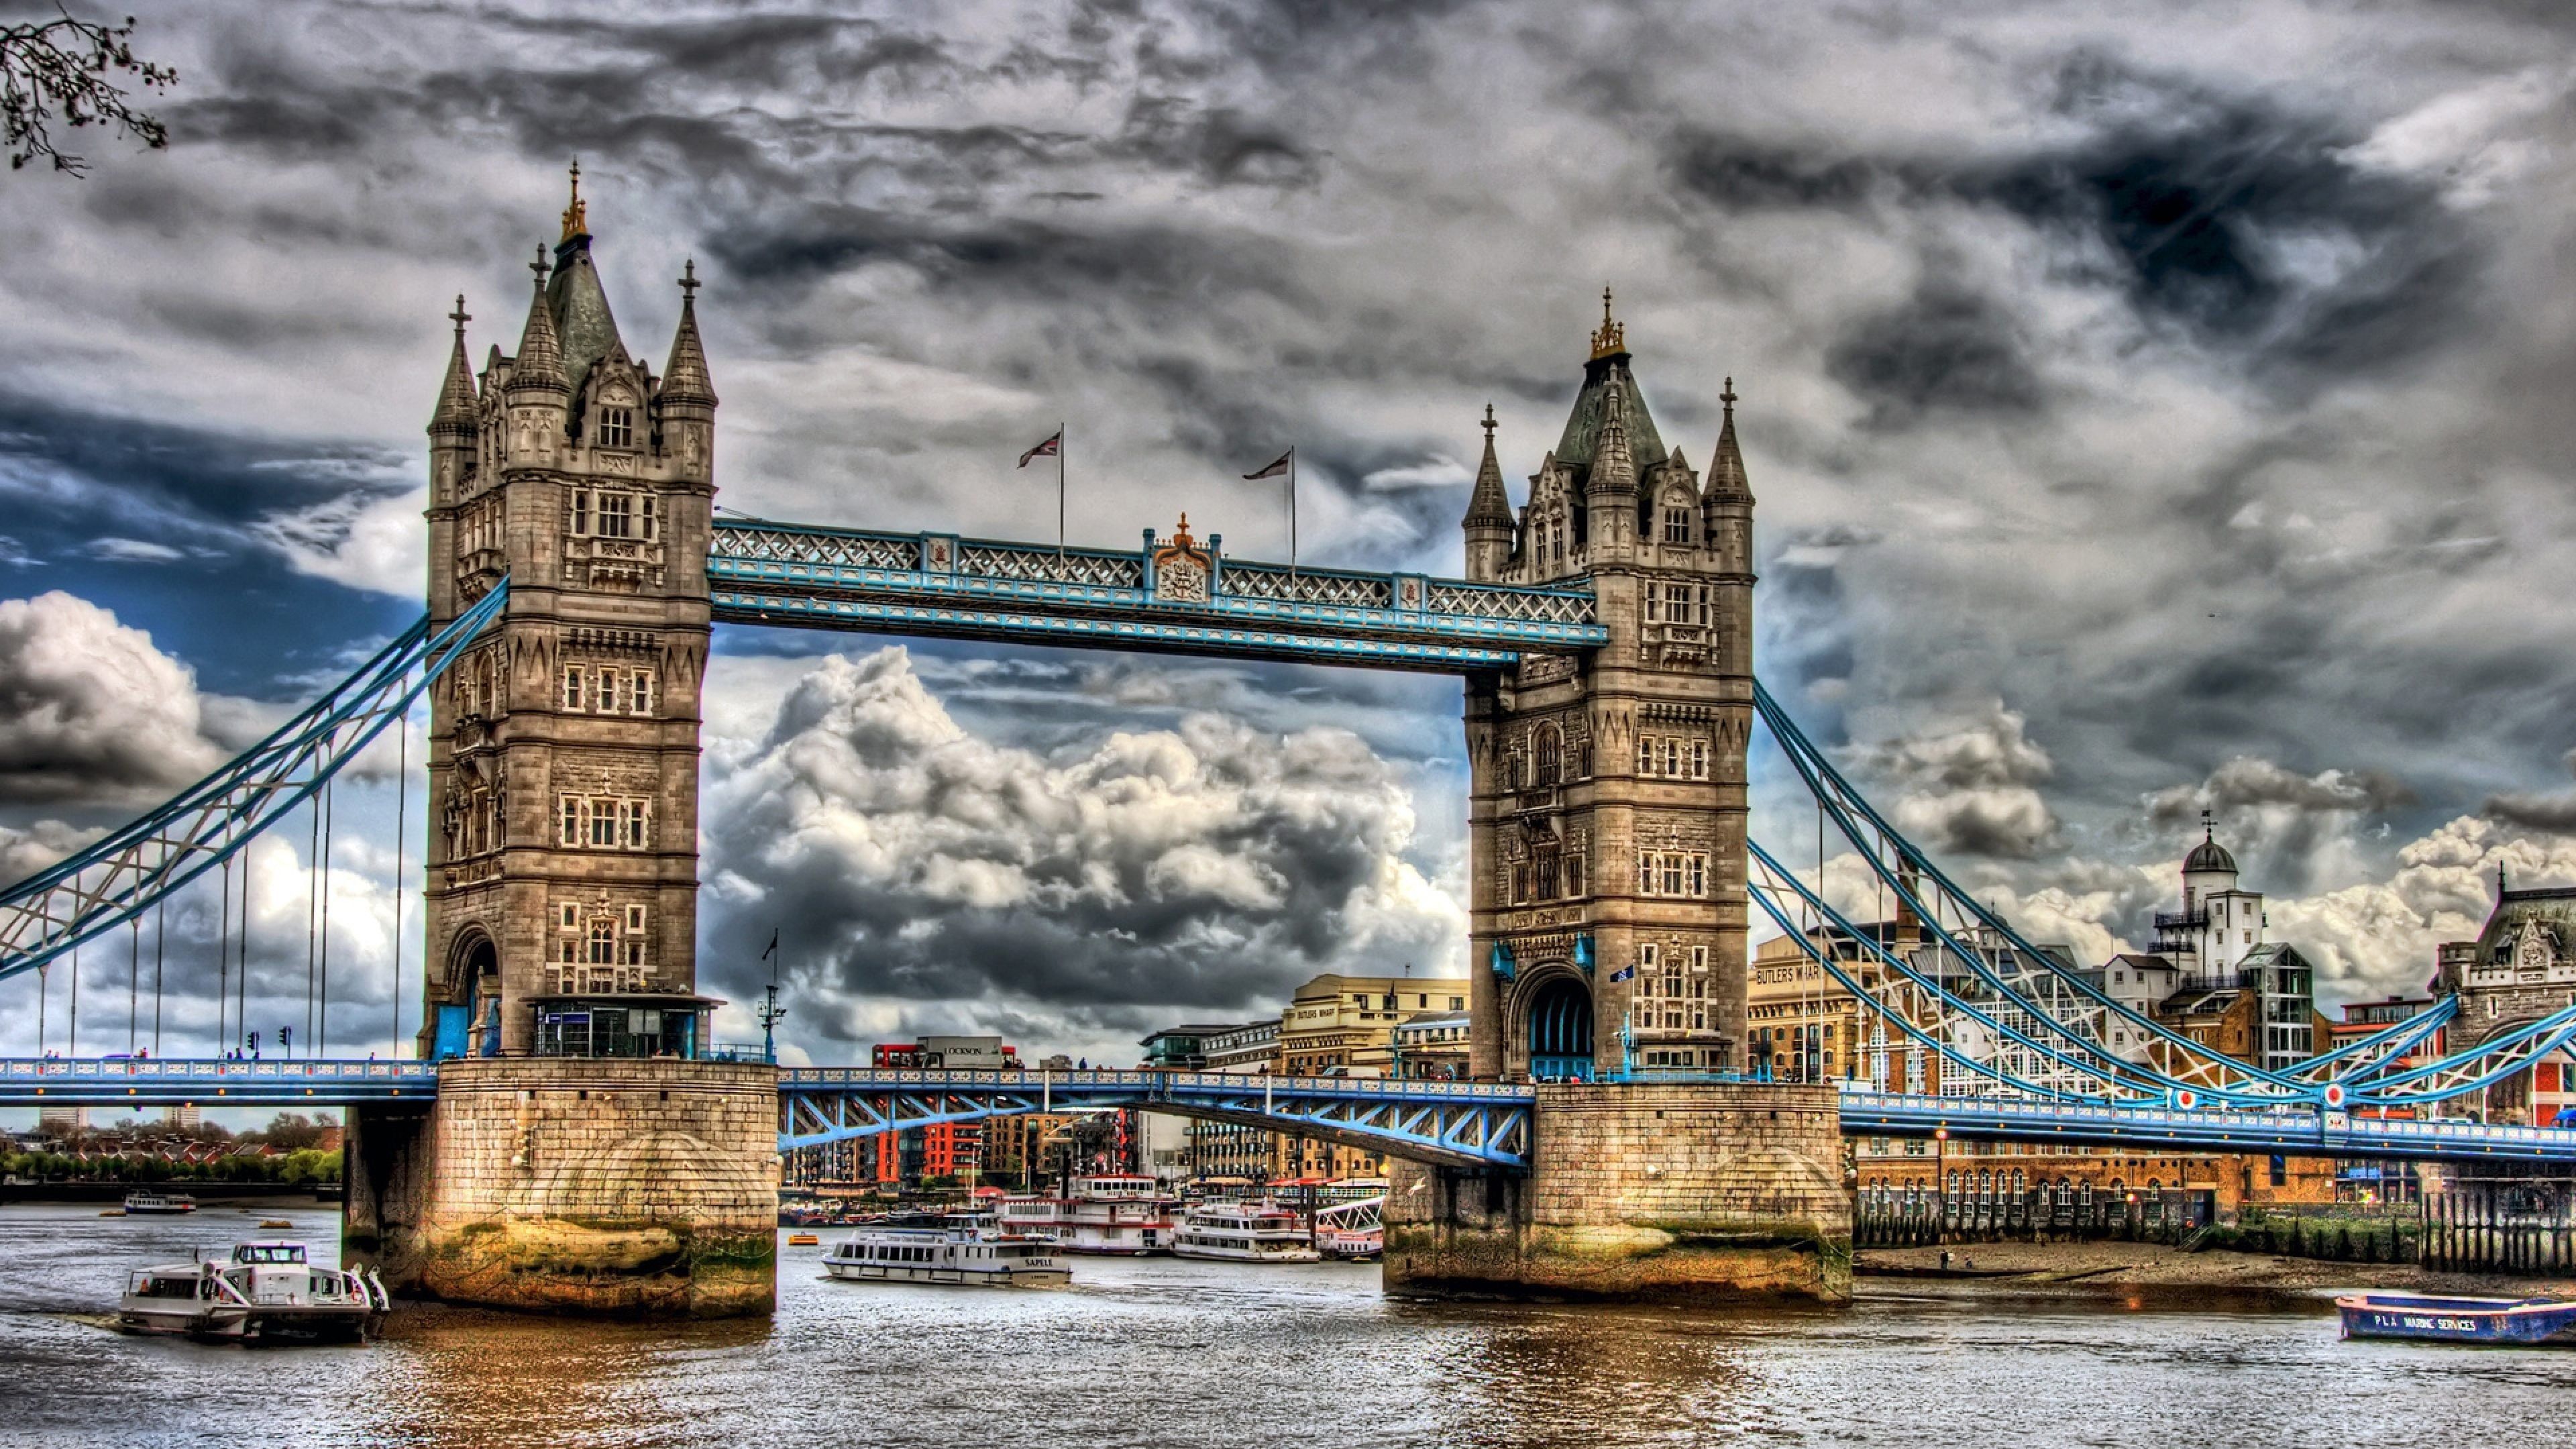 Sunny Gallery. Tower bridge london, London landmarks, Wallpaper for mobile phones